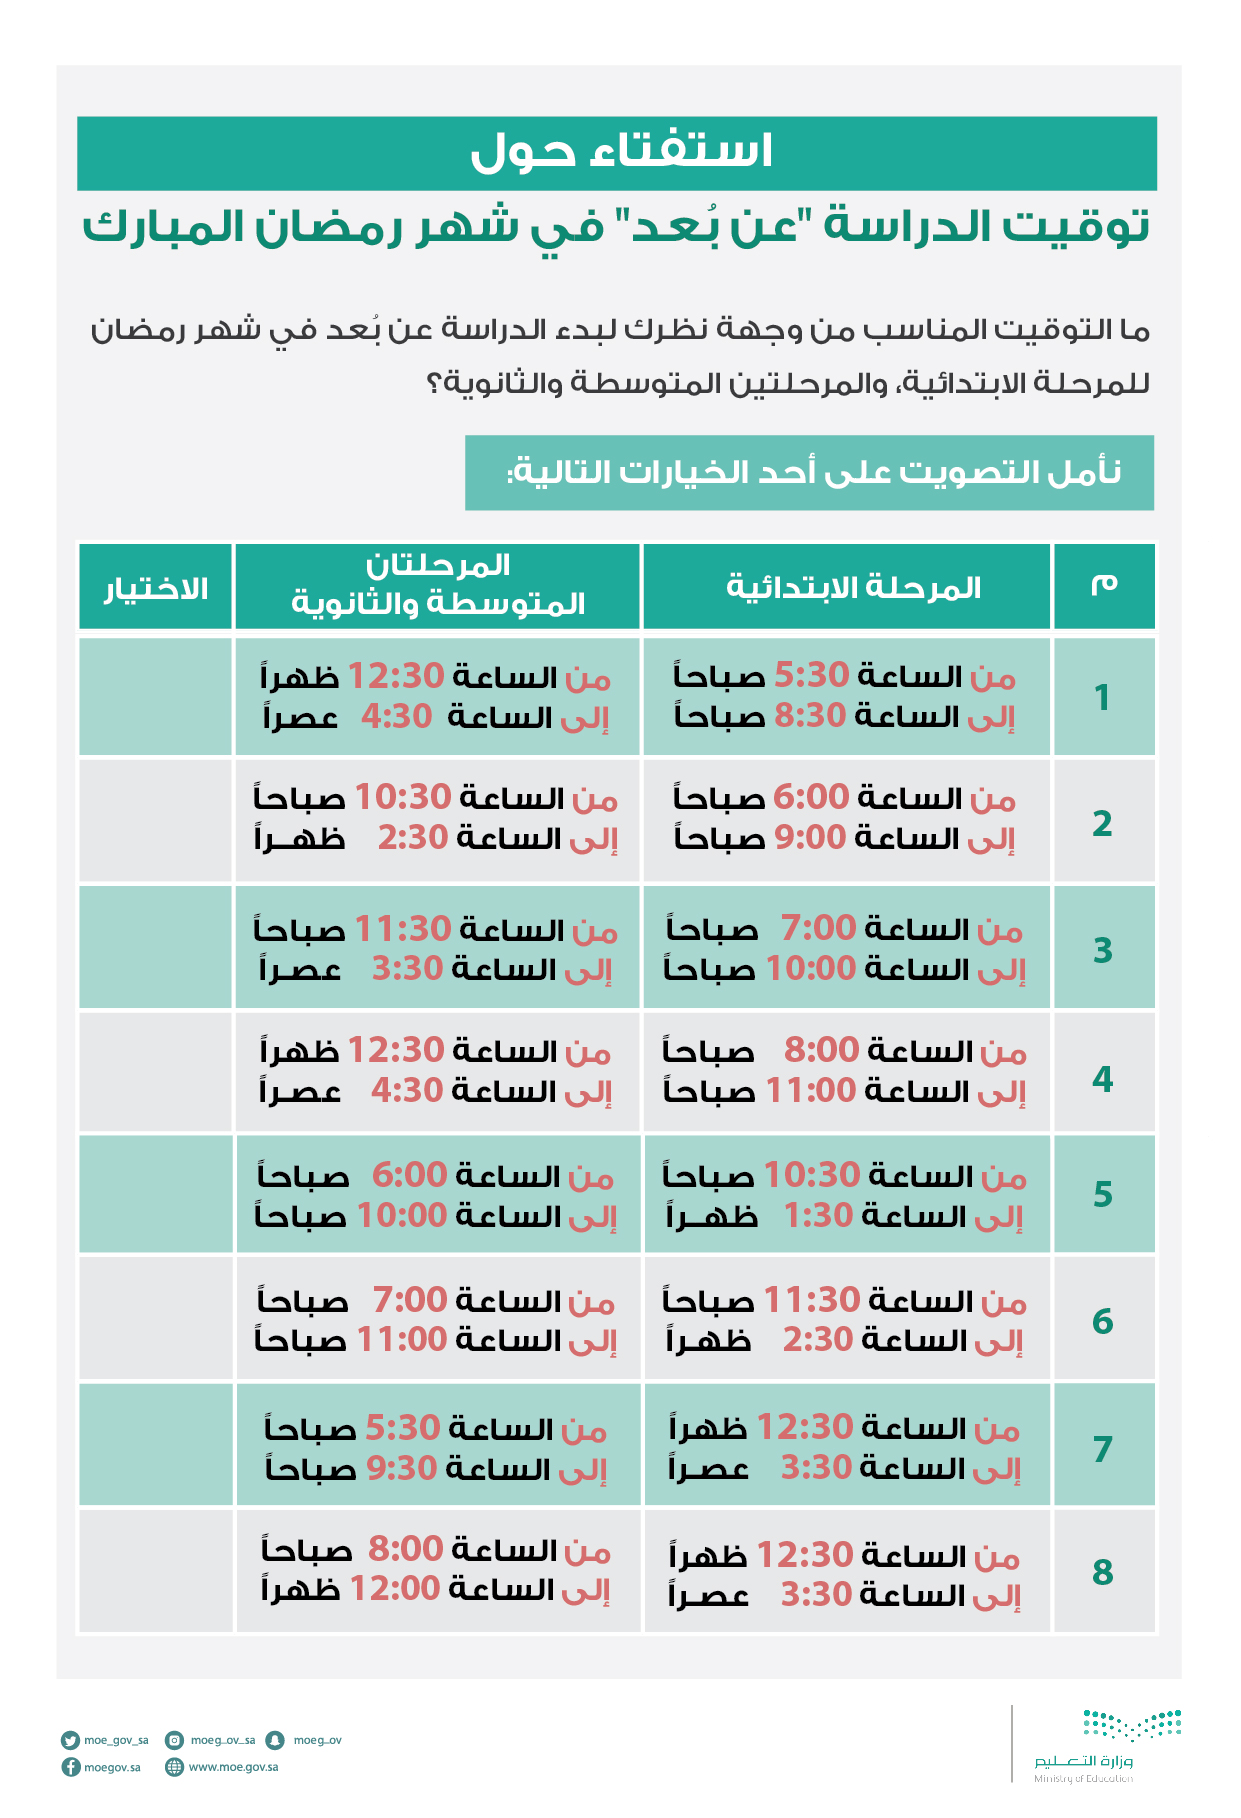 رابط نظام نور noor.moe.gov.sa وطريقة المشاركة في استفتاء مواعيد الدراسة في رمضان